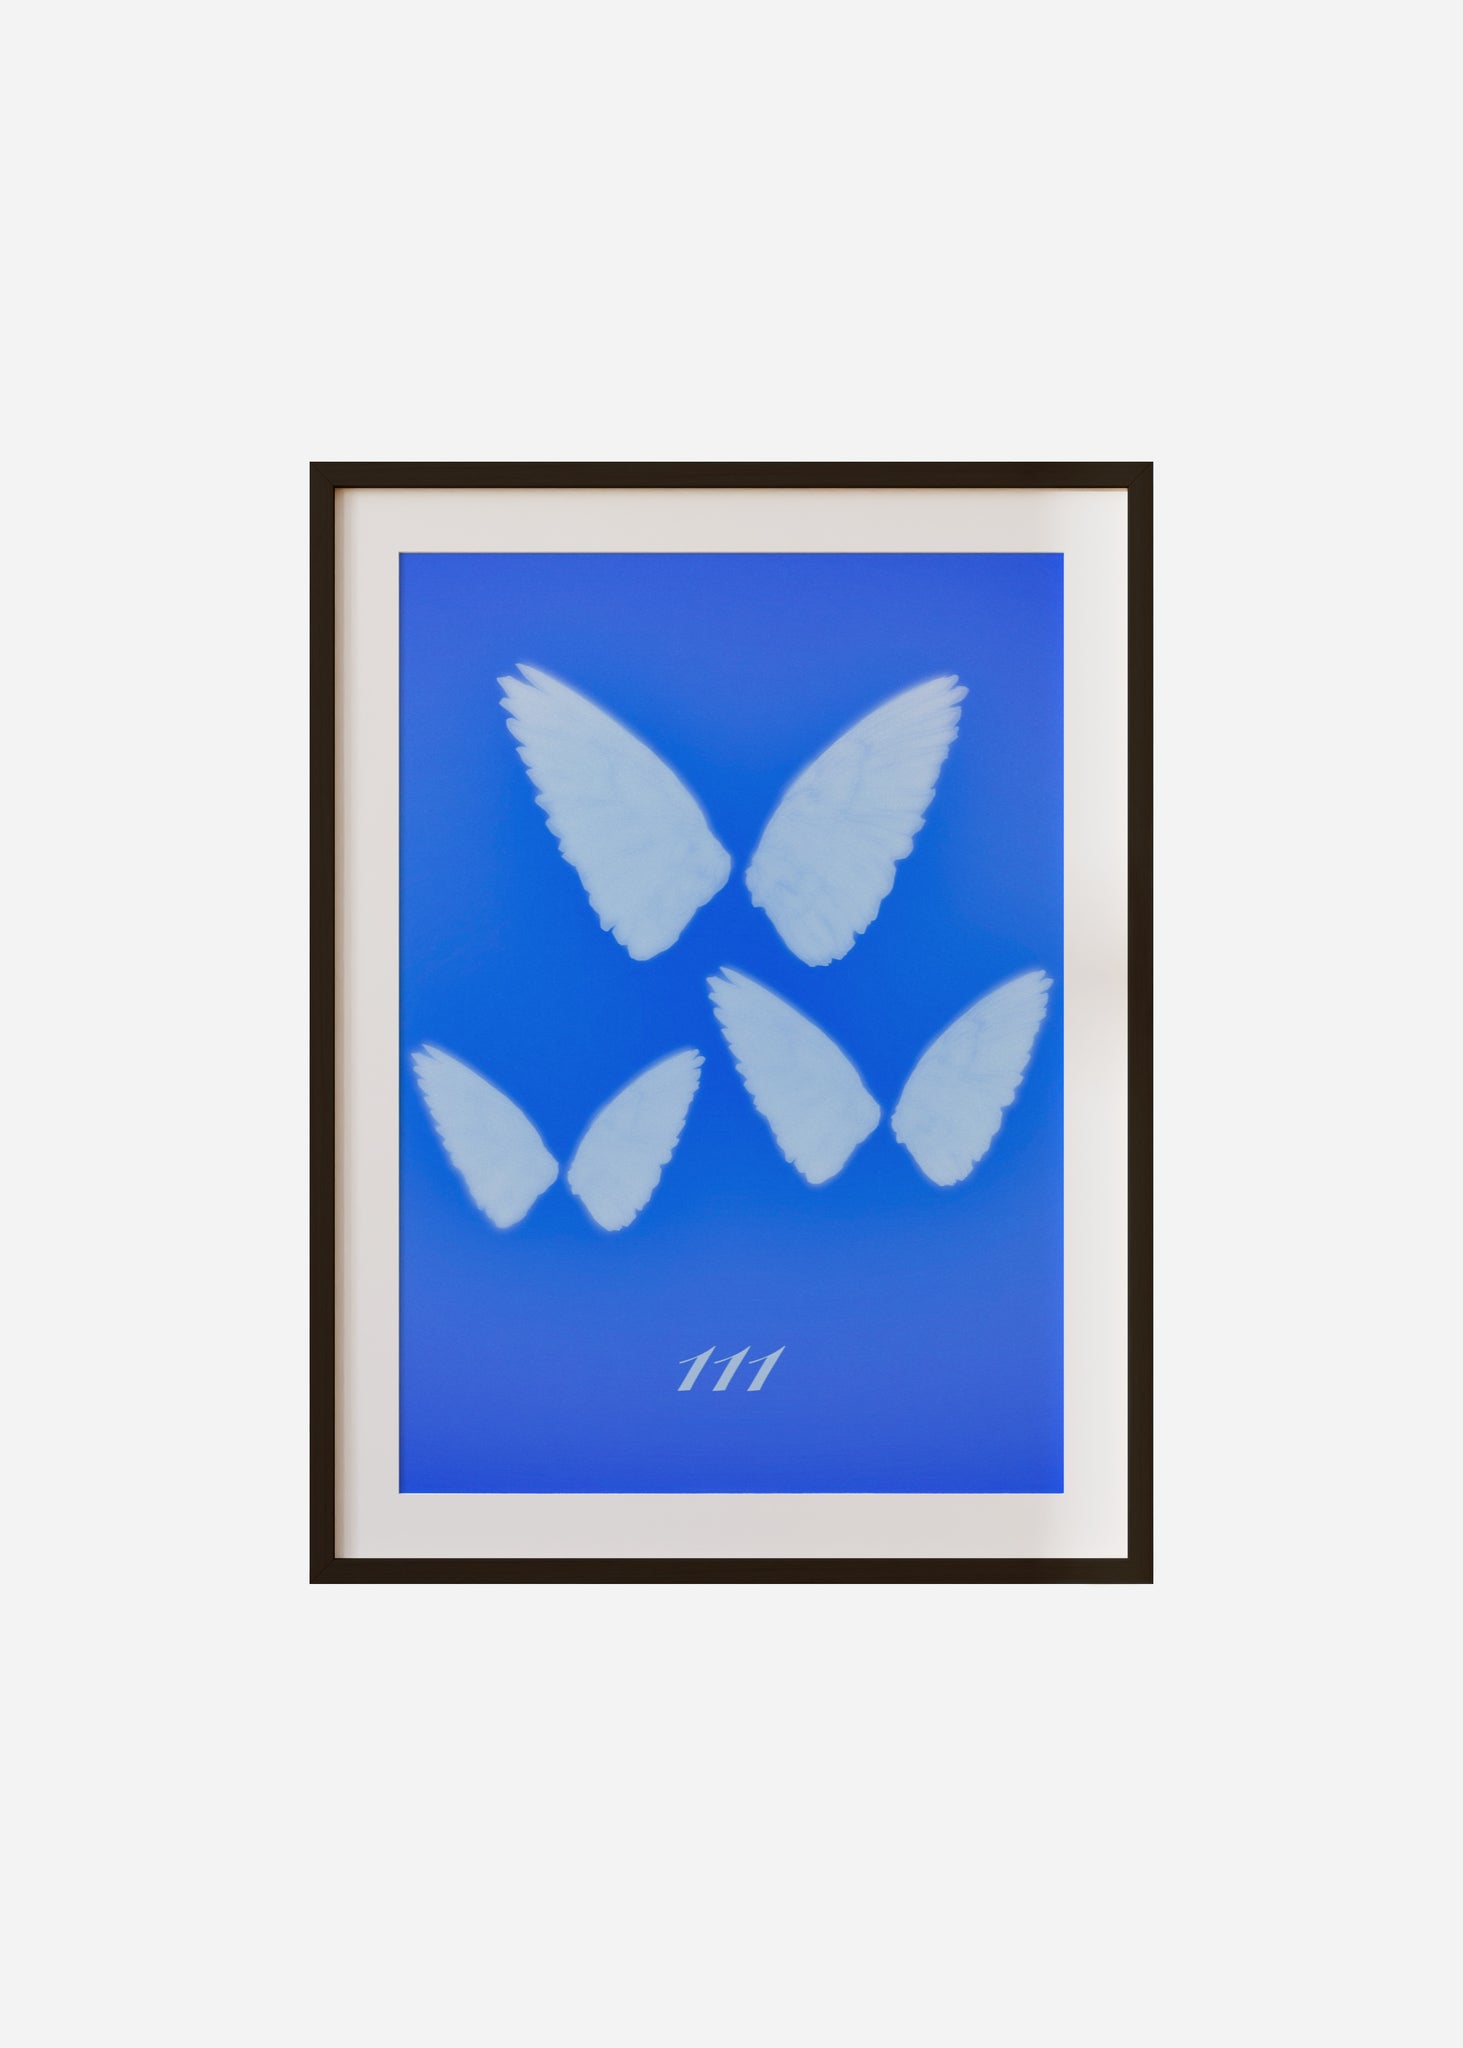 Angel Wings 111 Framed & Mounted Print